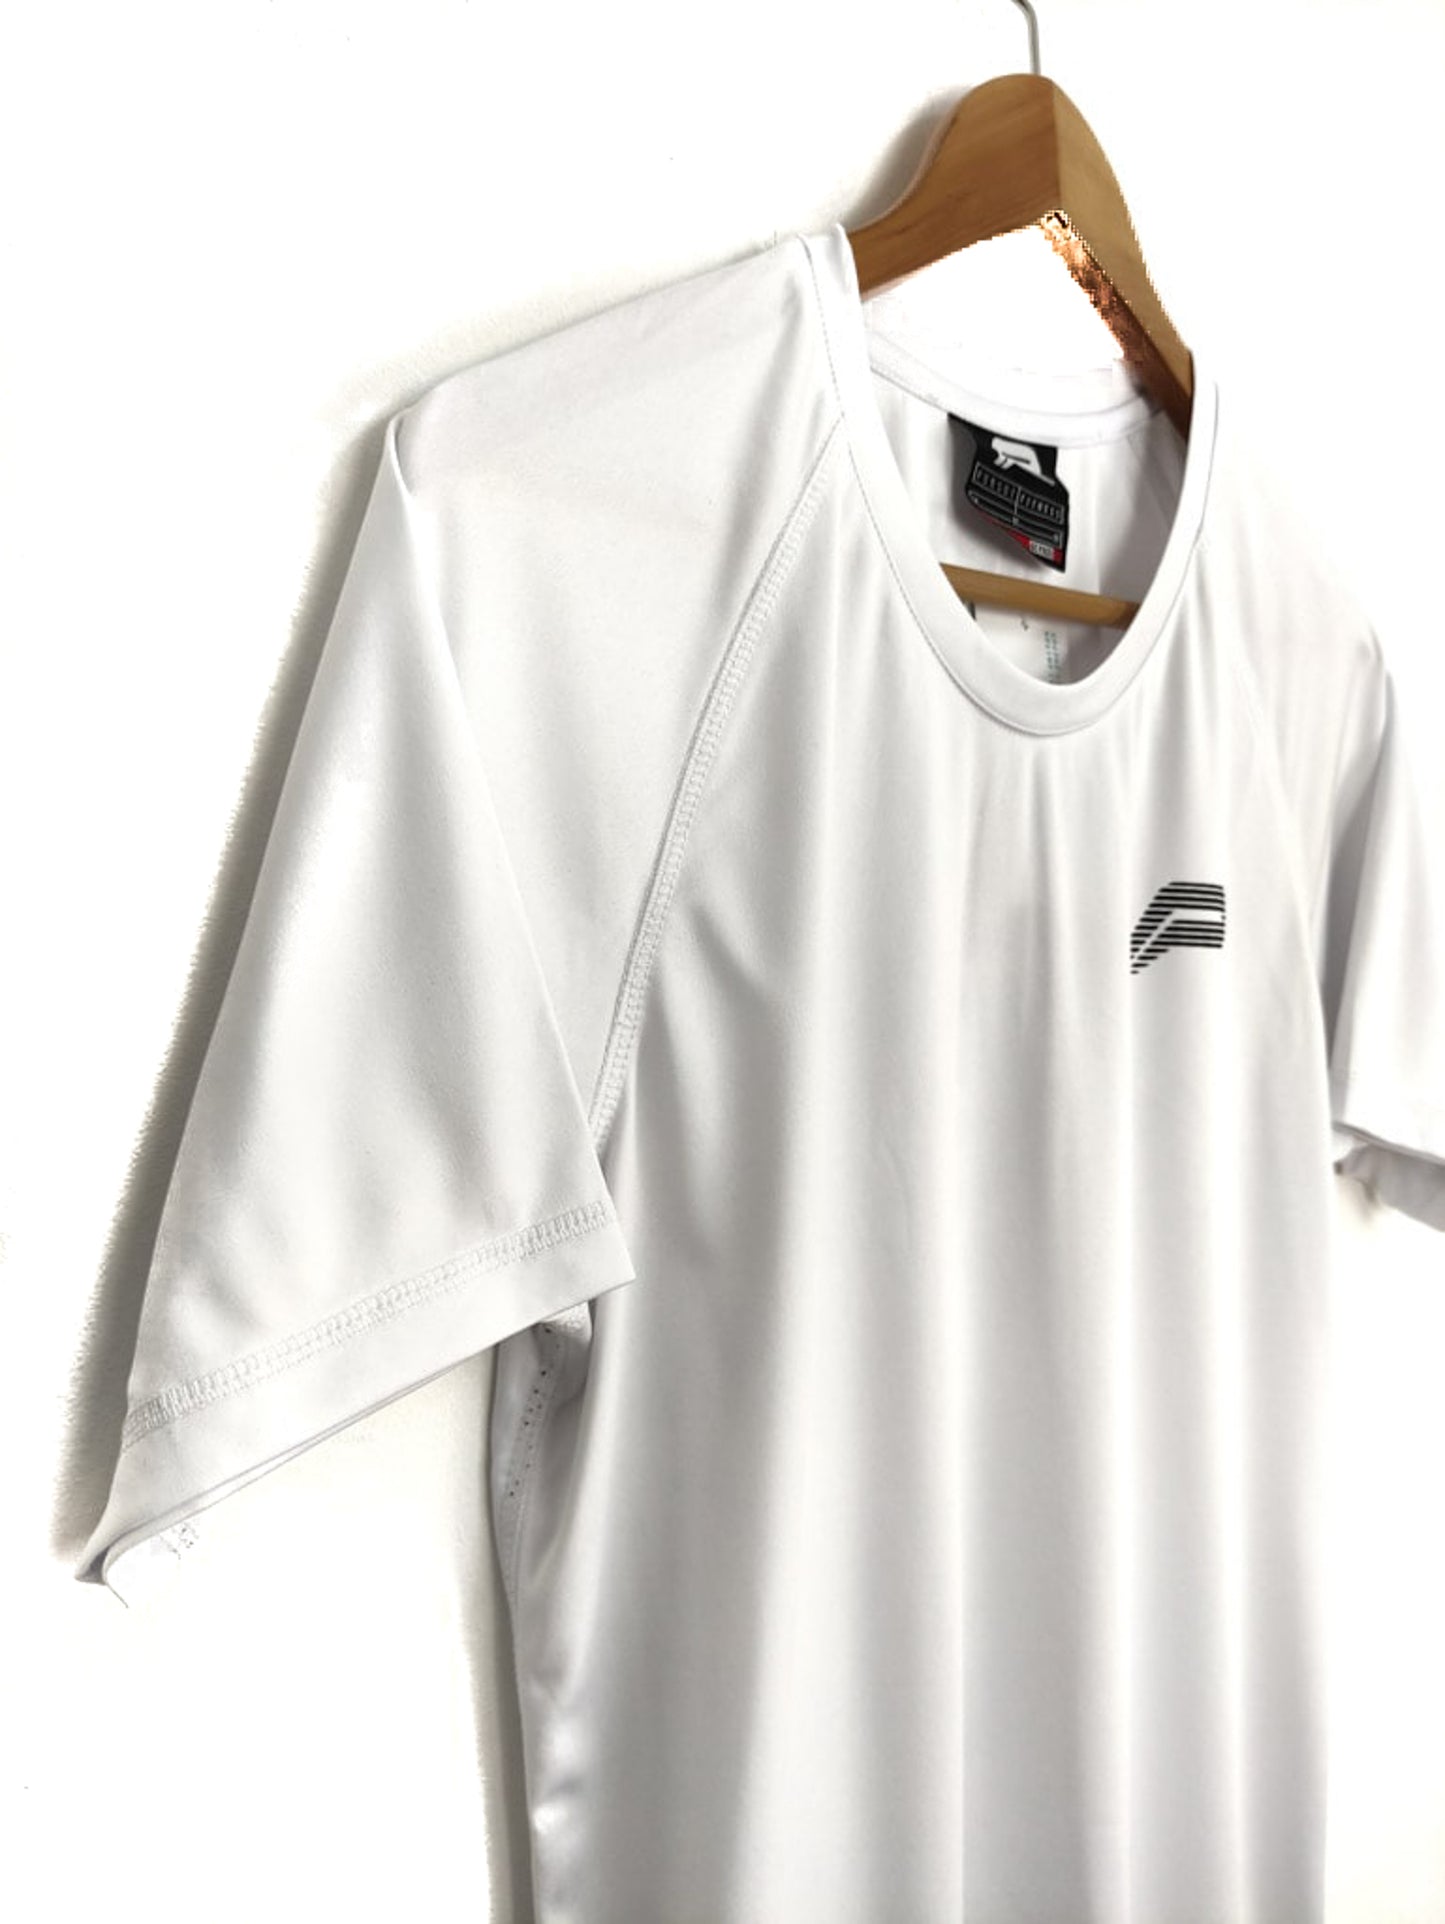 Αθλητική Ανδρική Μπλούζα PURSUE FITNESS σε Λευκό Χρώμα (Medium)